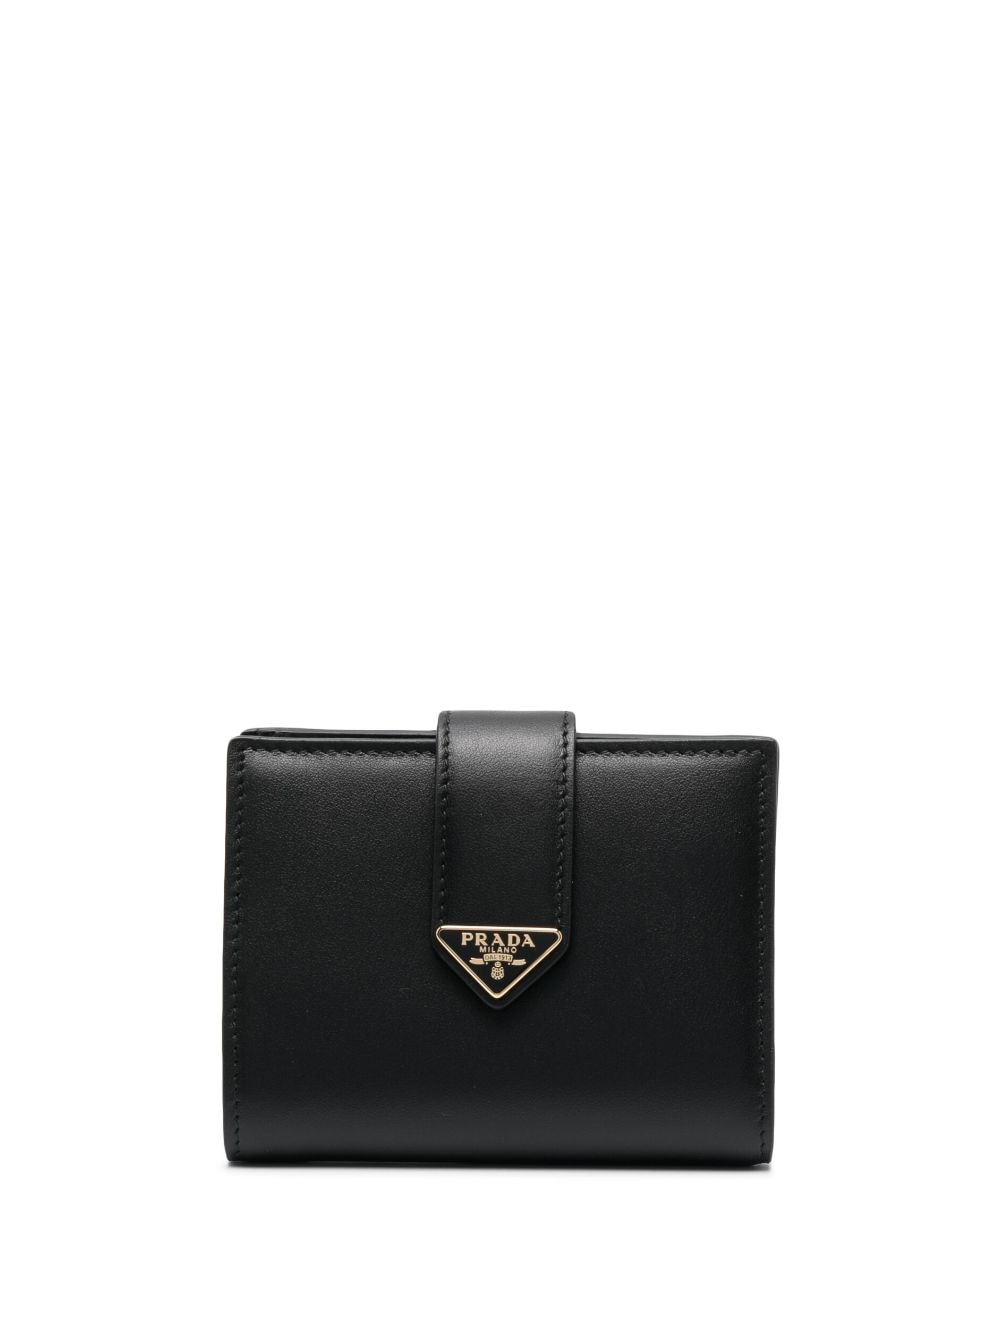 Prada Calf Leather Wallet - Loschi Boutique